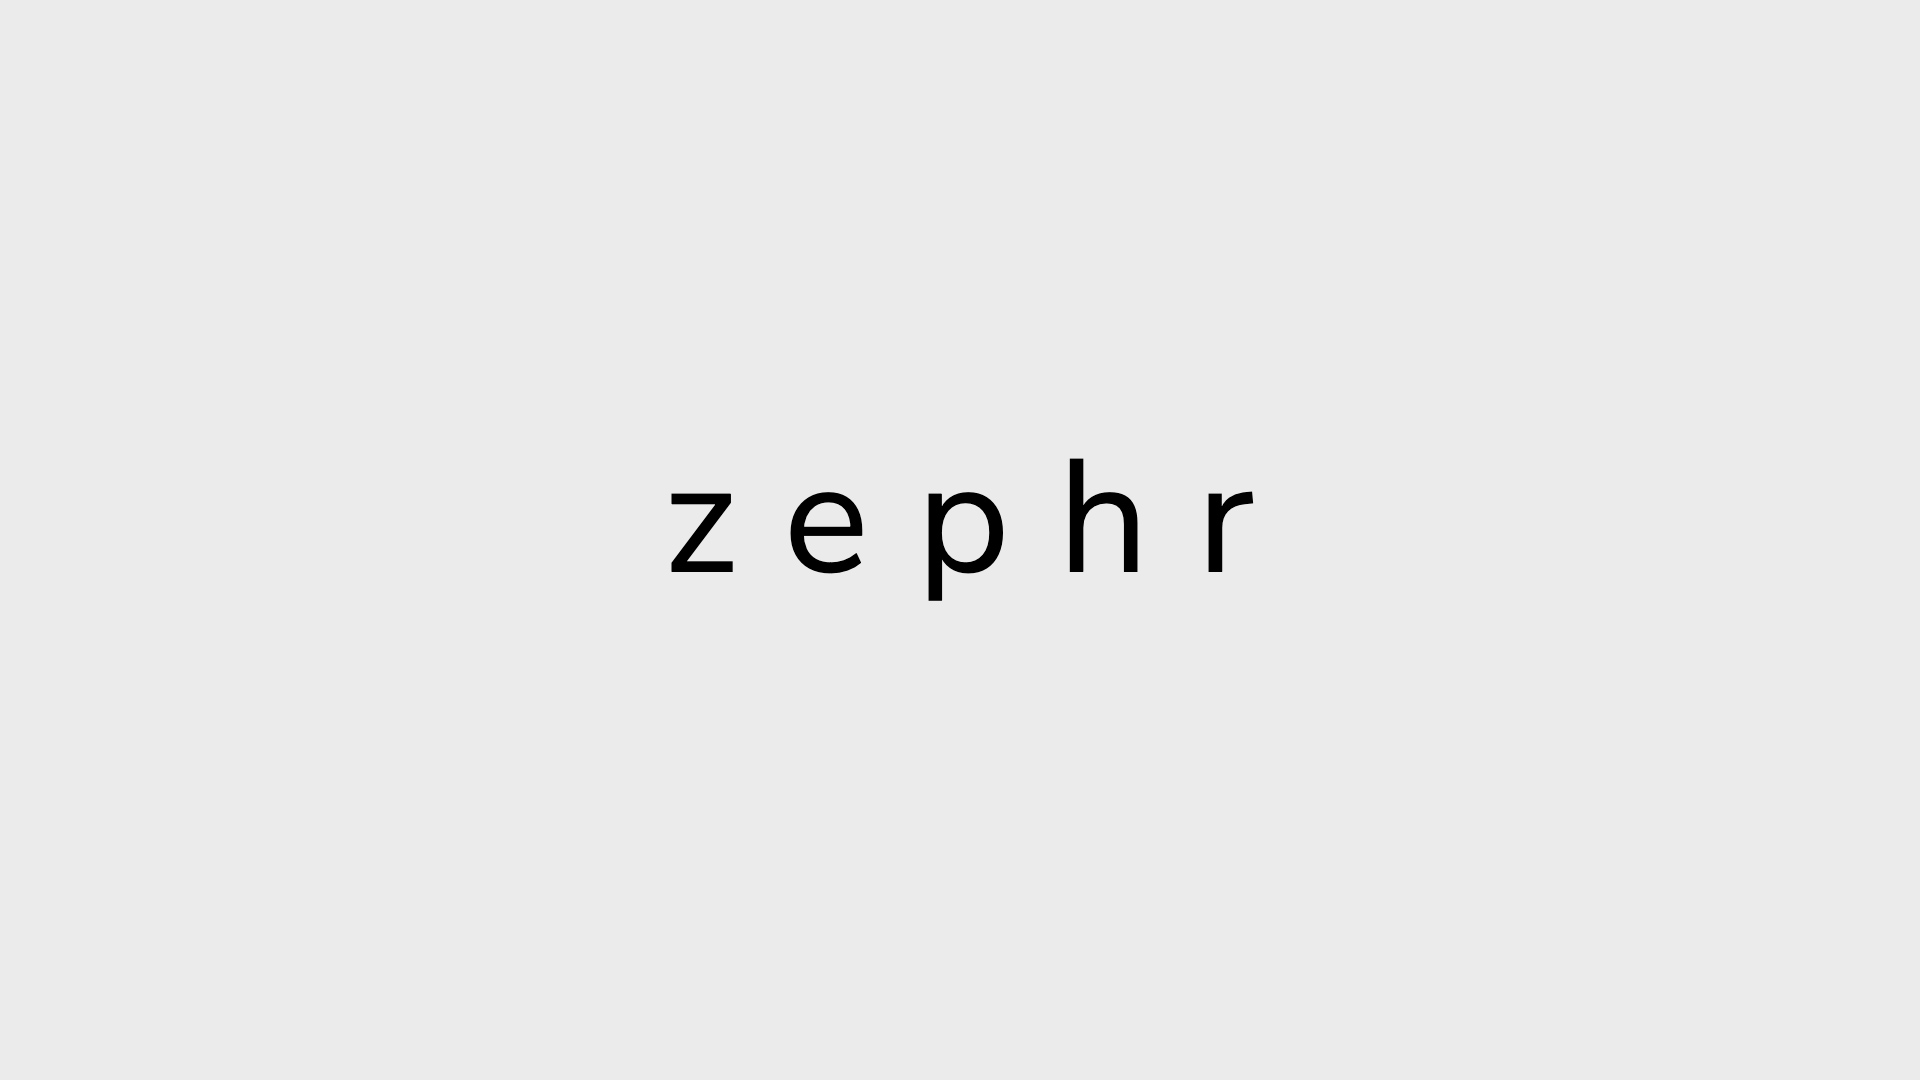 Zephrが350万ドルを得てステルス状態から脱却、携帯電話を使った「ネットワーク型GPS」を計画中